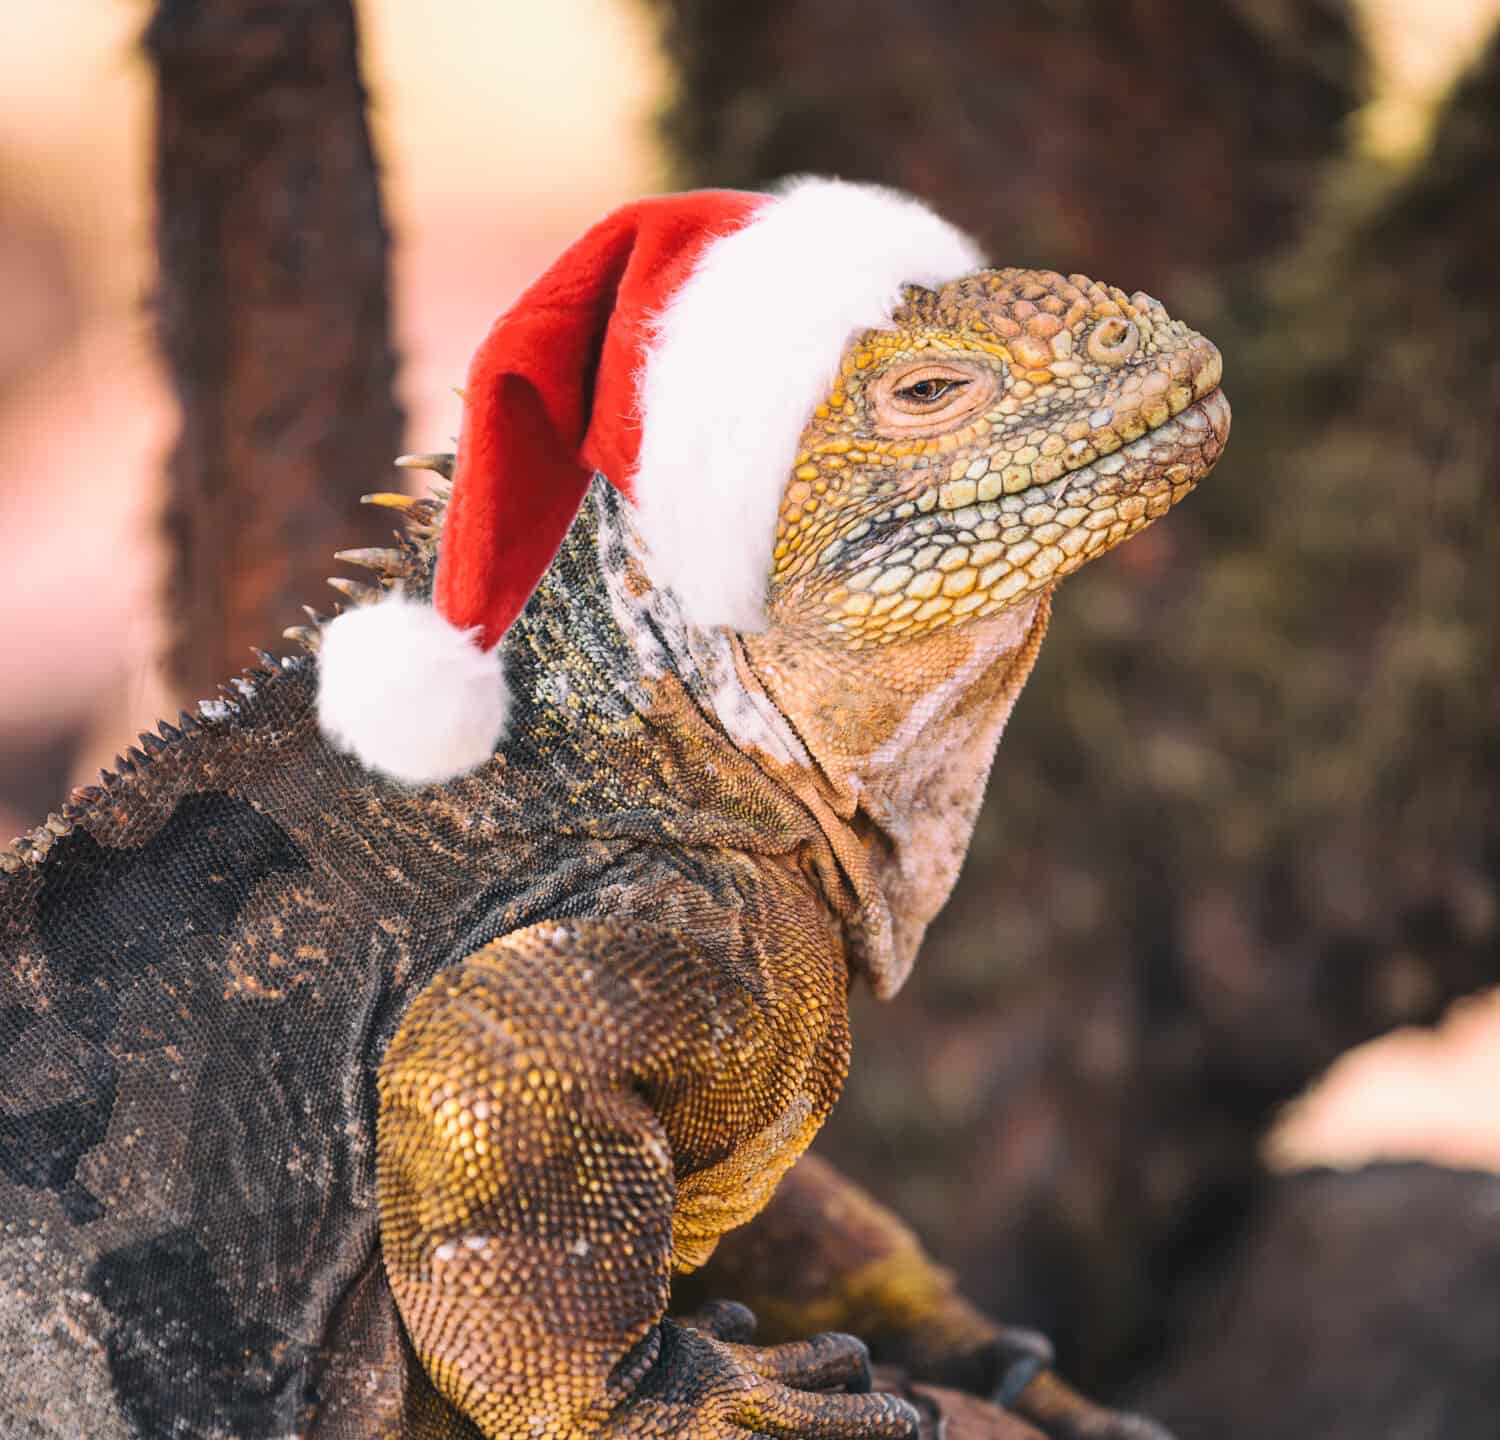 Galapagos Christmas Concept - Divertente immagine di Iguana che indossa un cappello da Babbo Natale, noto anche come finta iguana natalizia.  Da North Seymour Island Tour in nave da crociera delle Isole Galapagos.  Il cappello di Babbo Natale è photoshoppato su Iguana.